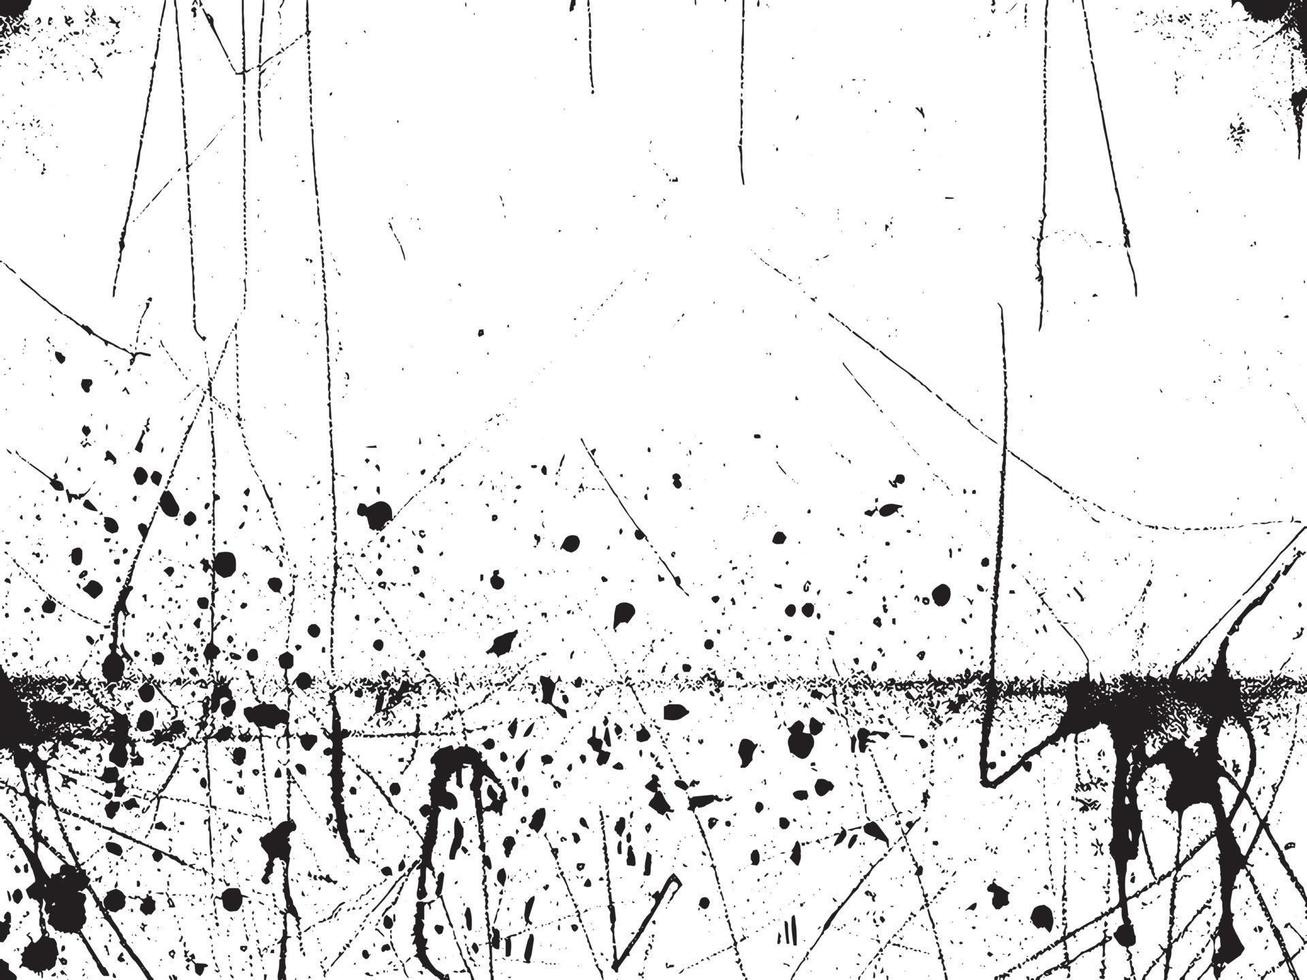 årgång grunge betong vägg textur med bedrövad element av krita, fläckar, repor, och ljud i svart och vit. vektor eps 10